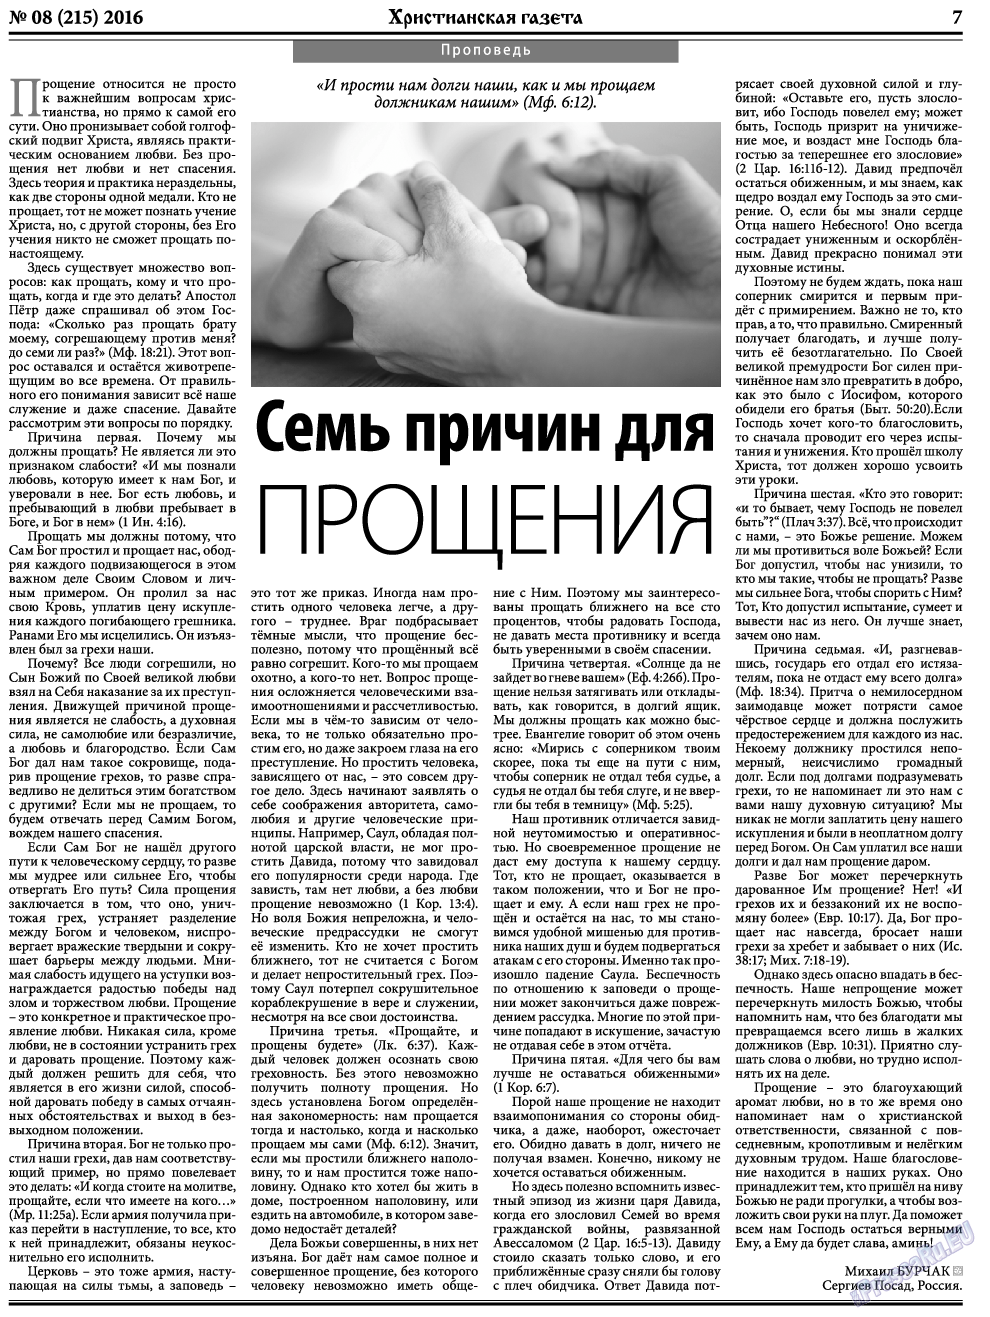 Христианская газета, газета. 2016 №8 стр.7